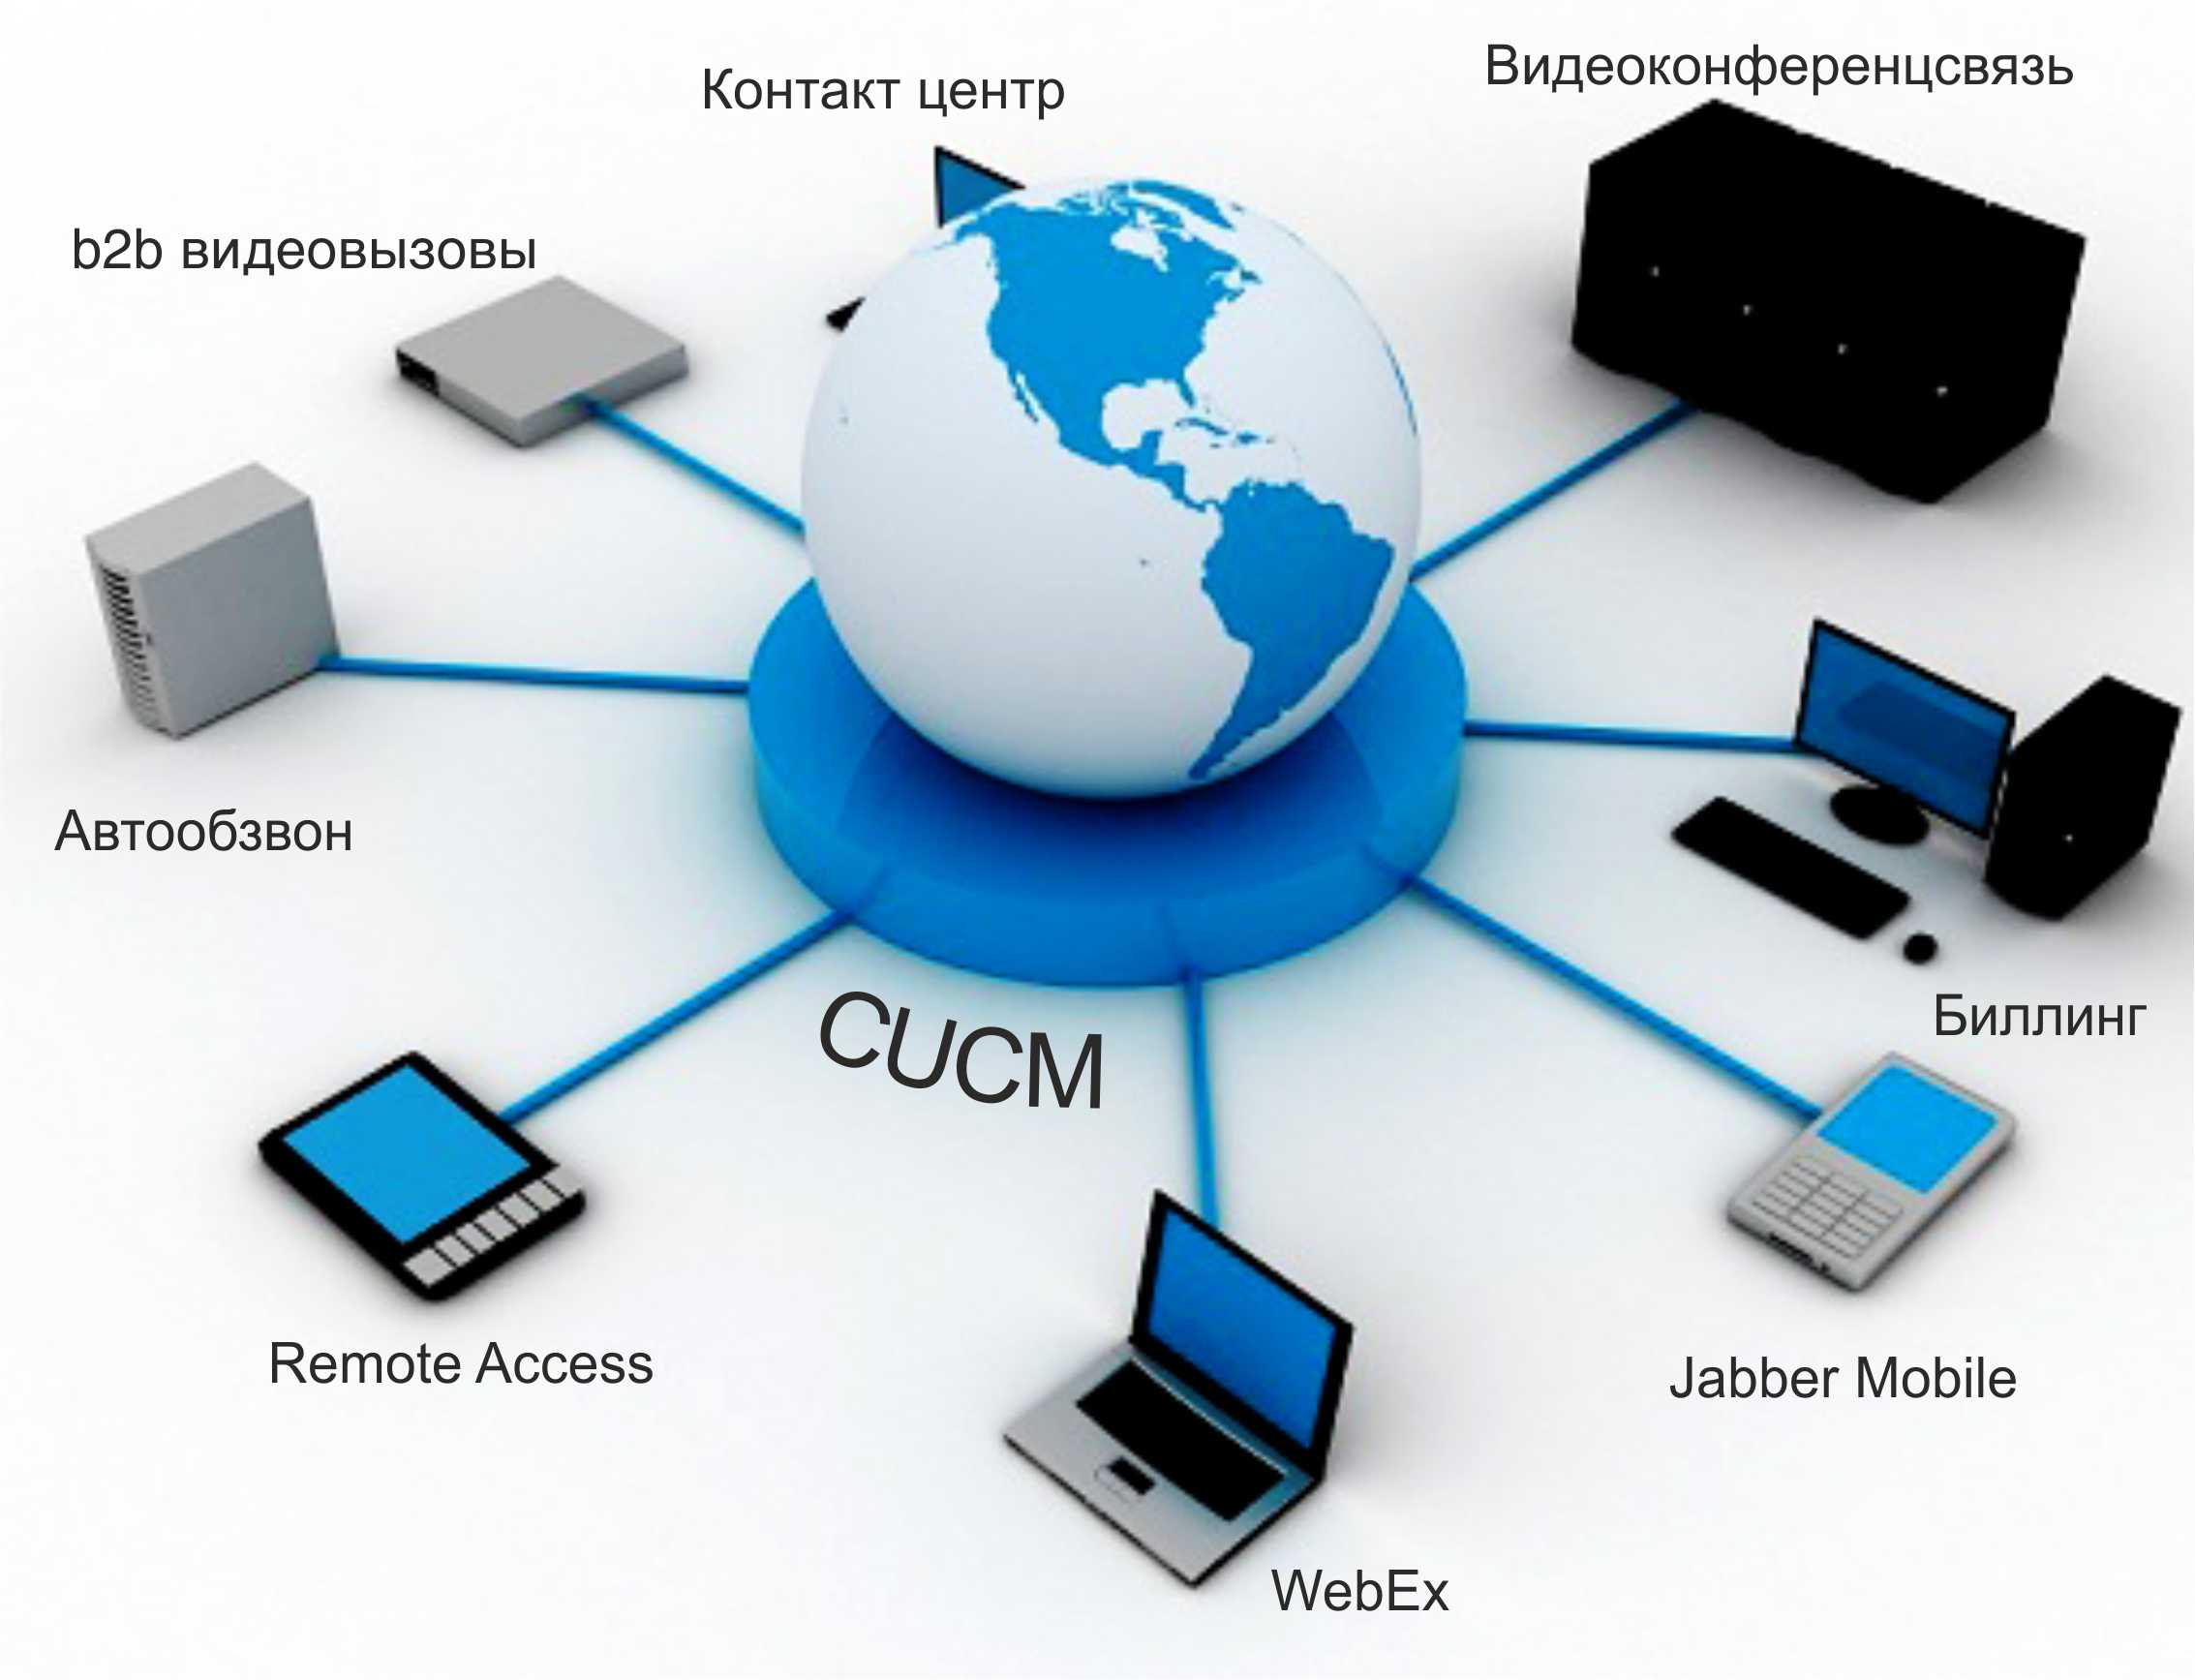 Техническая информация в интернете. Компьютерные сети. Телекоммуникационная инфраструктура. Глобальная компьютерная сеть. Современные компьютерные сети.